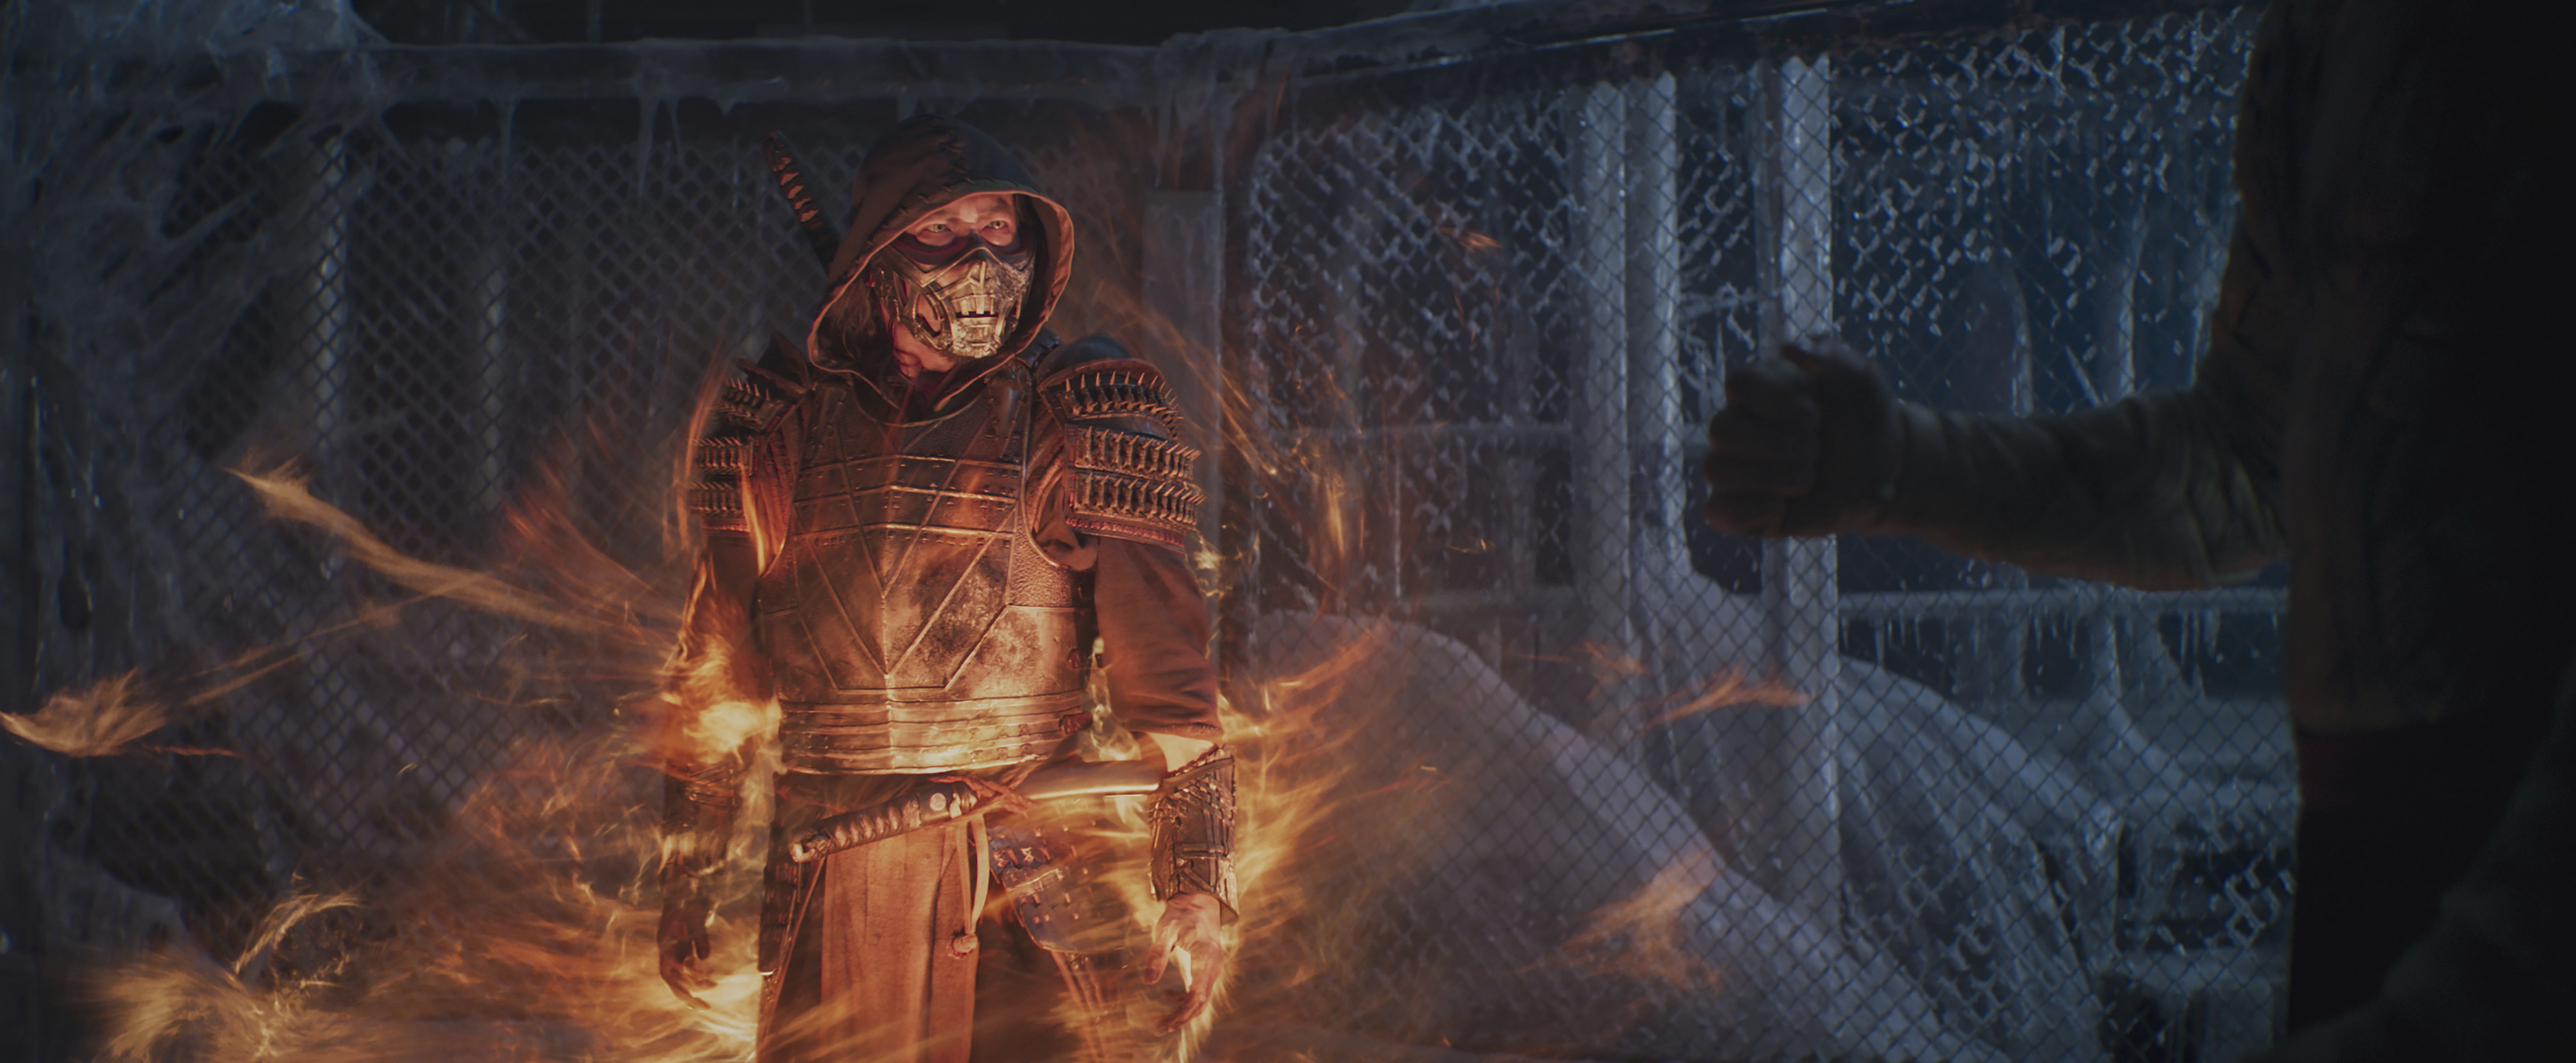 Mortal Kombat 2 está sendo gravado e claquete revela muito do filme; veja